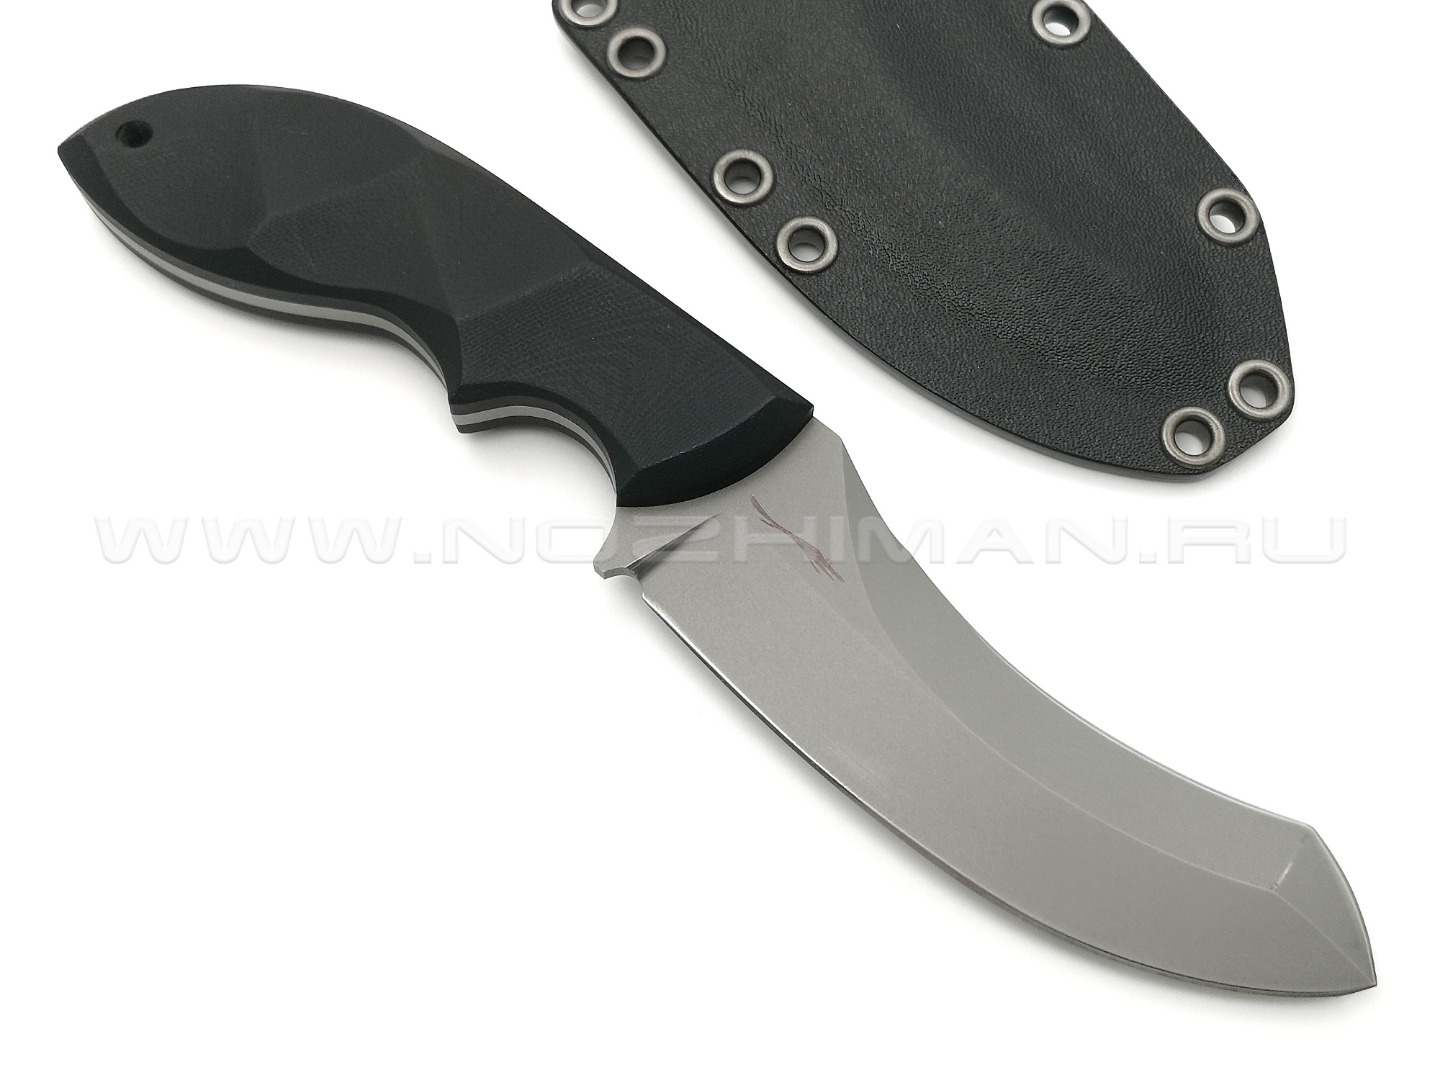 Волчий Век нож Кондрат 10 сталь N690 WA bead-blast, рукоять G10 black